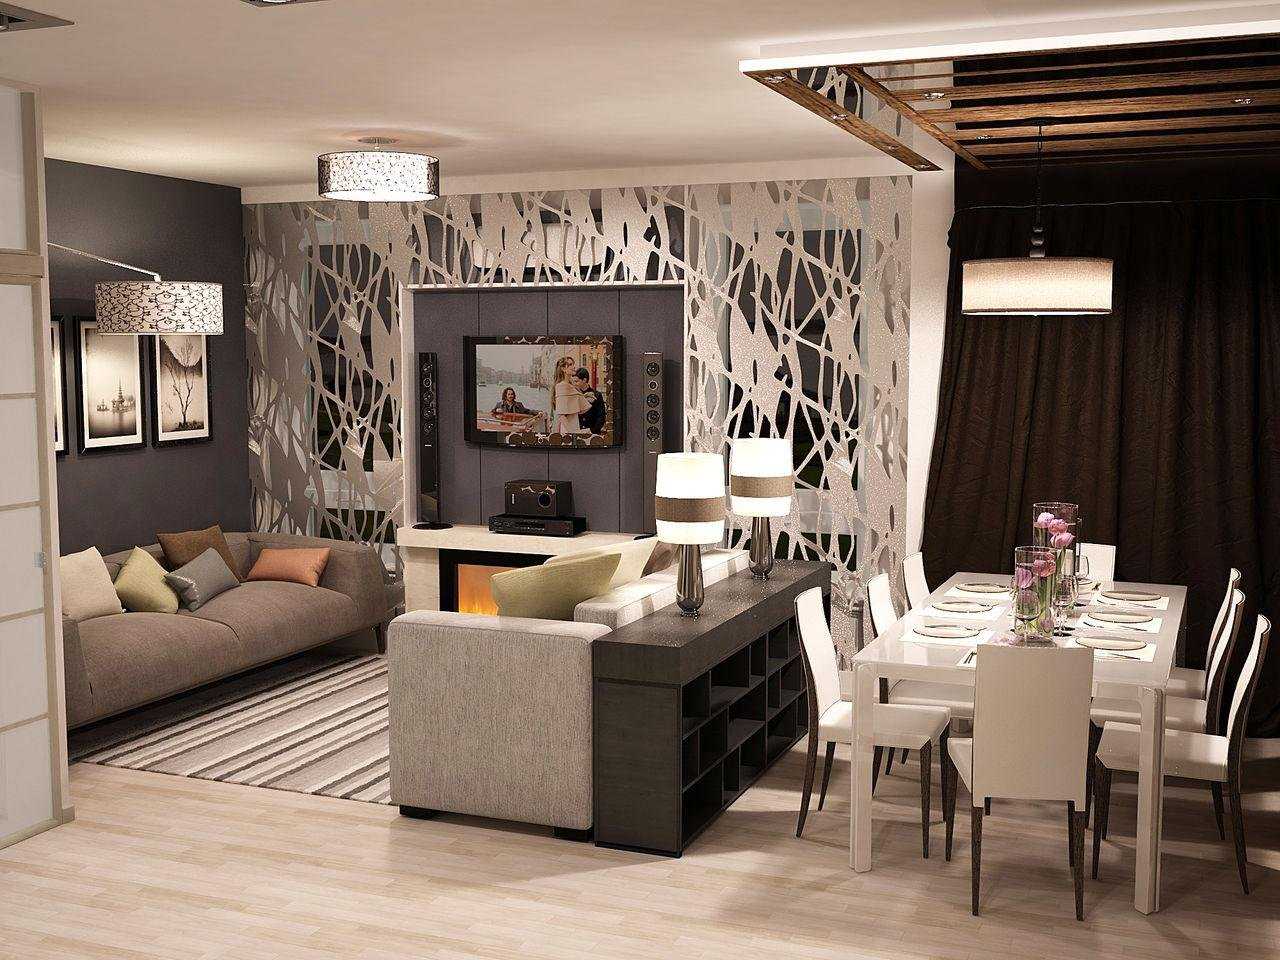 Интерьер кухни-гостиной (65 фото): дизайн совмещенных столовой и зала в квартире, красивые обои в соединенных комнатах в коттедже